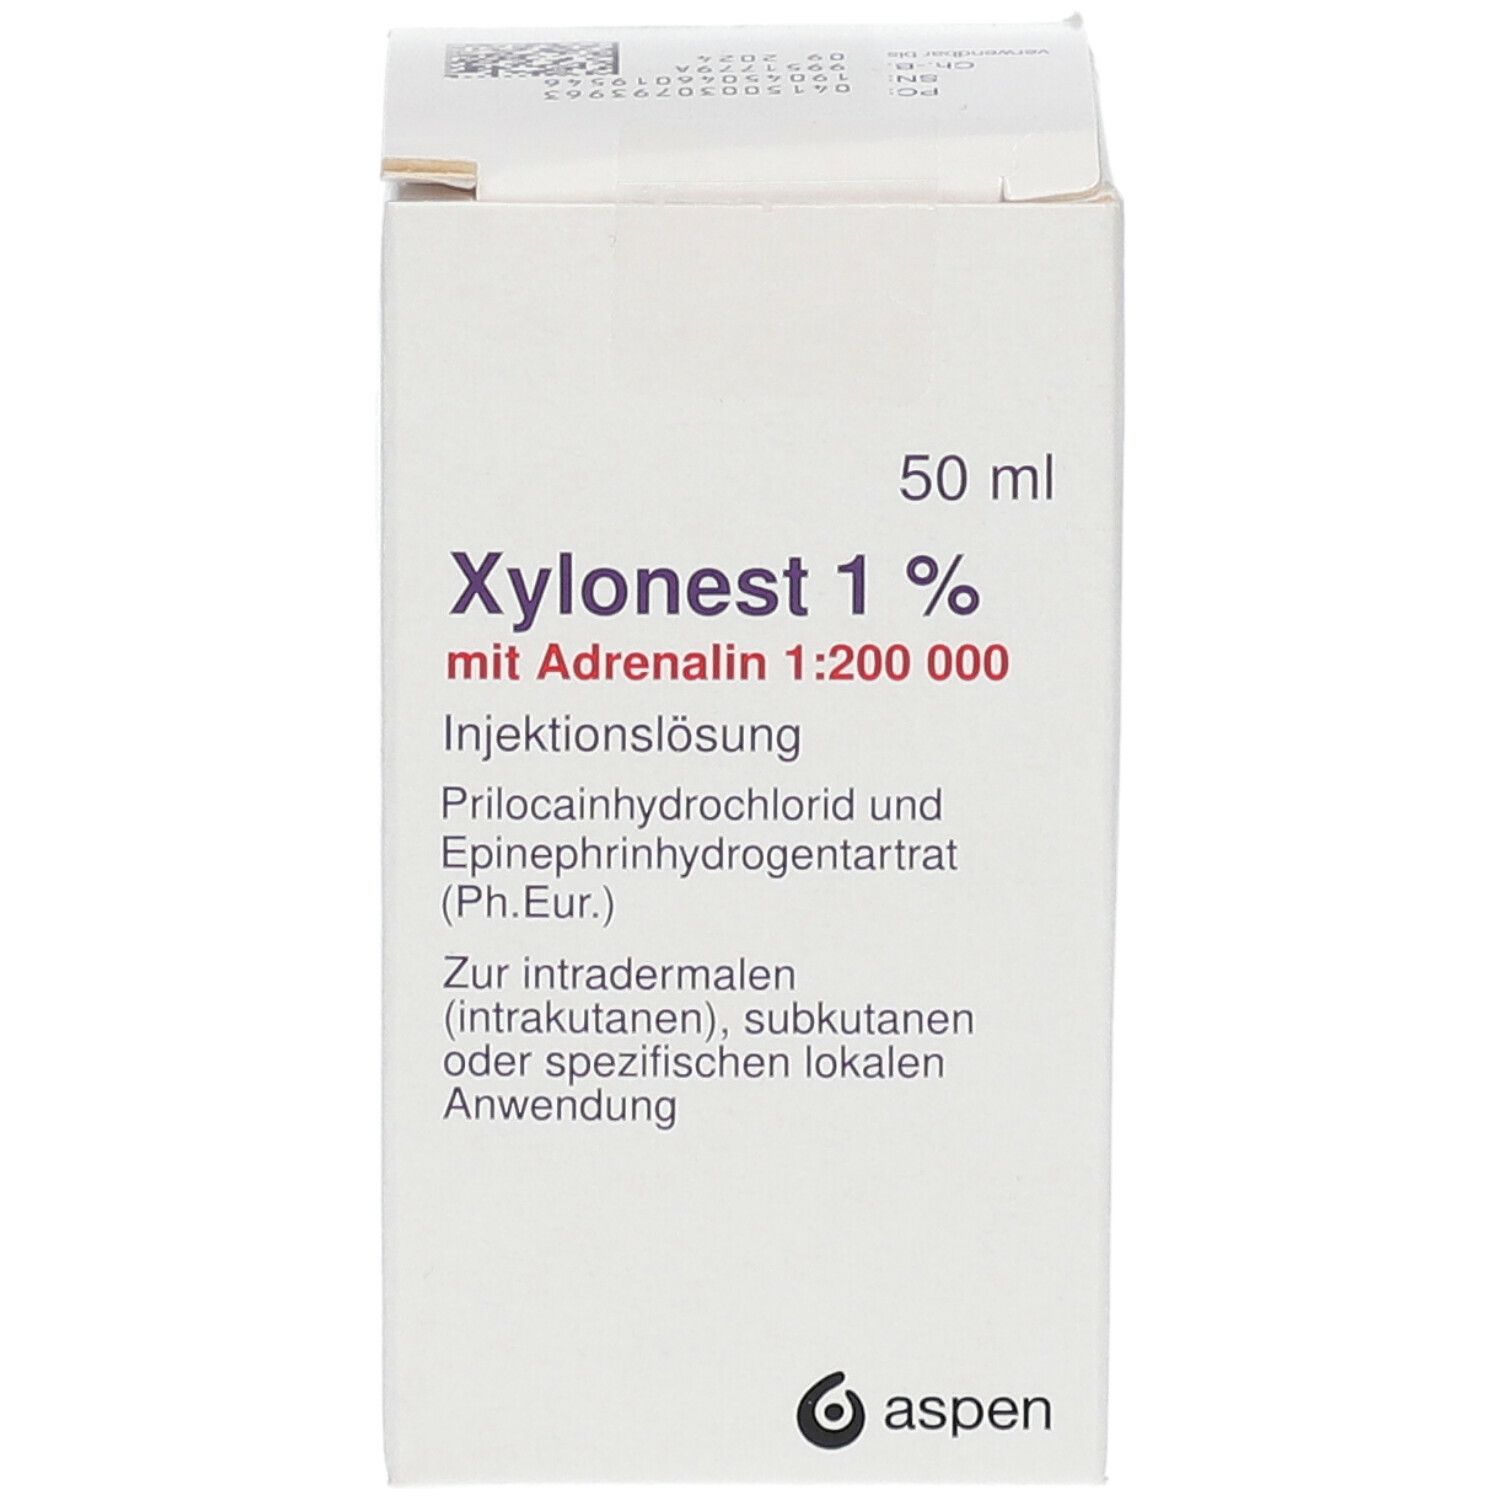 Xylonest® 1 % mit Adrenalin 1:200 000